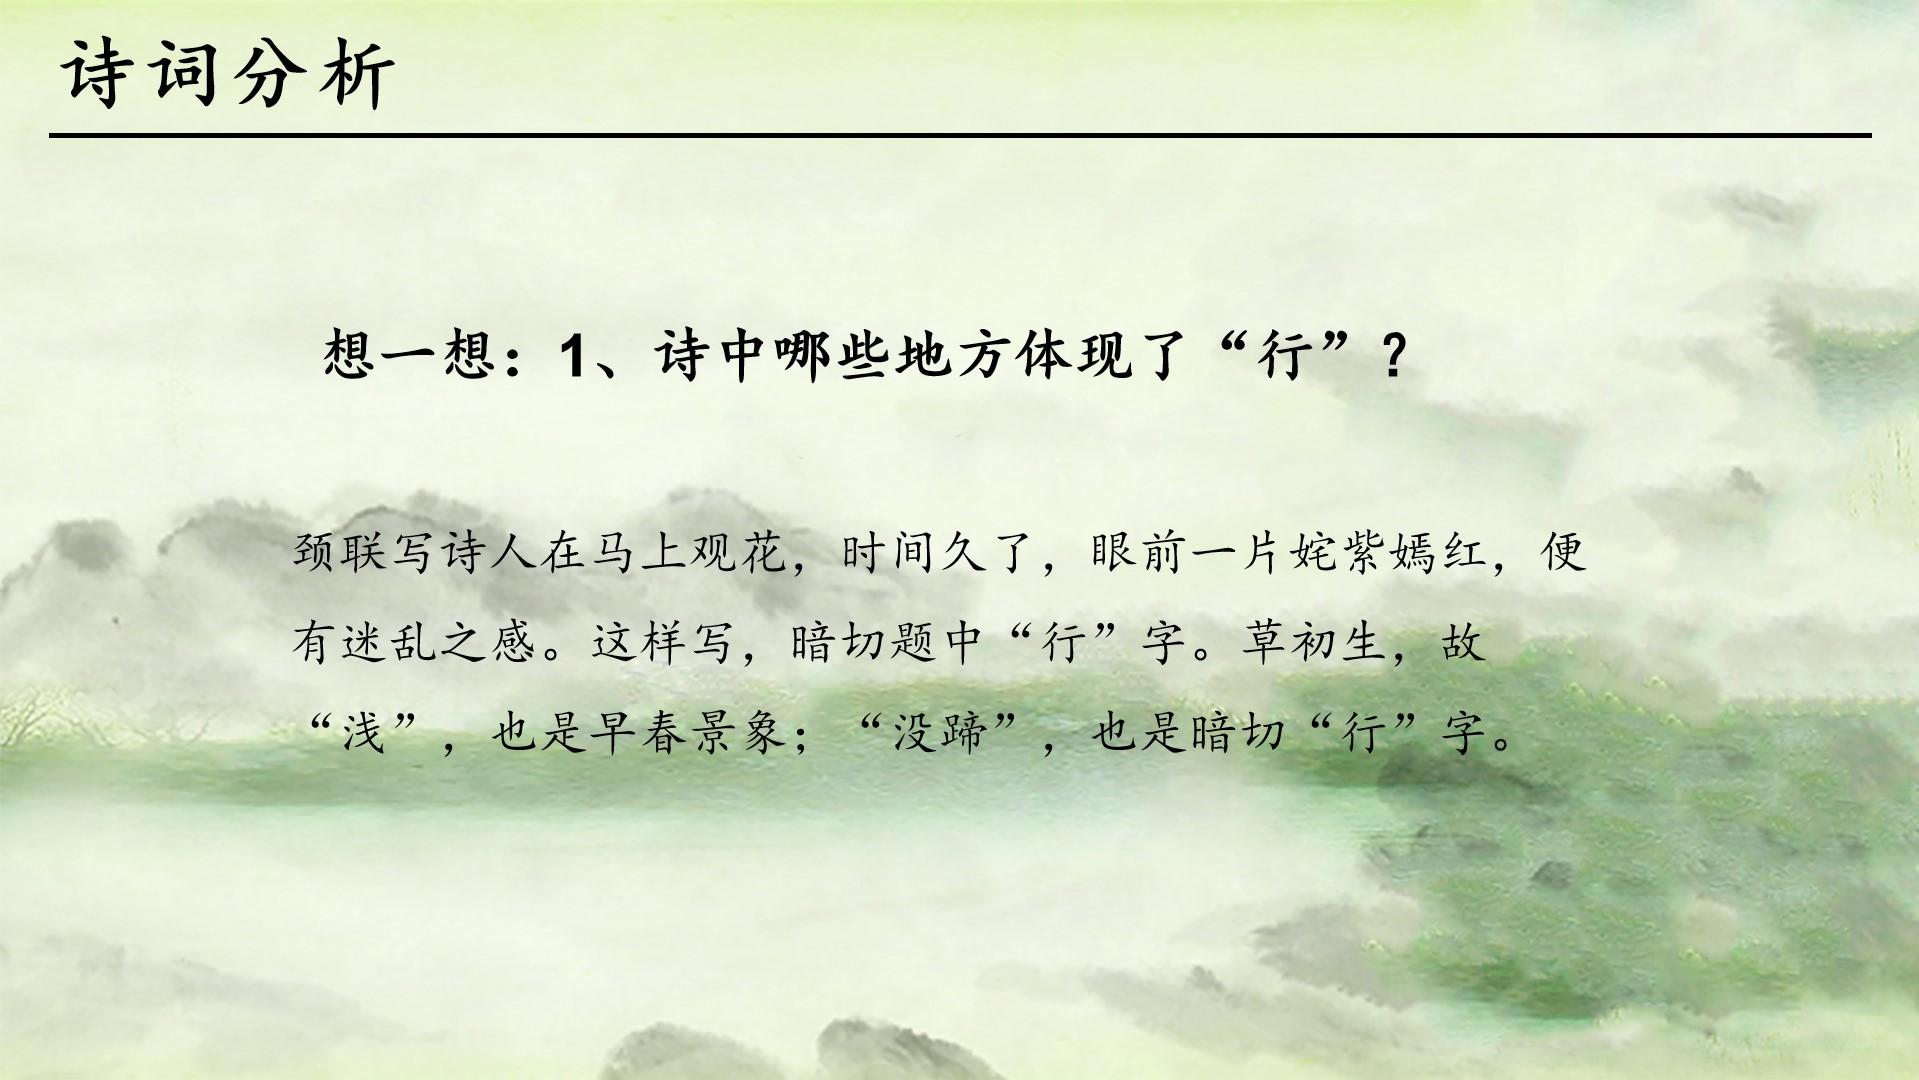 教育教学绿色黑色白色中国风诗人眼前景象地方切题云素材PPT模板1672564873551